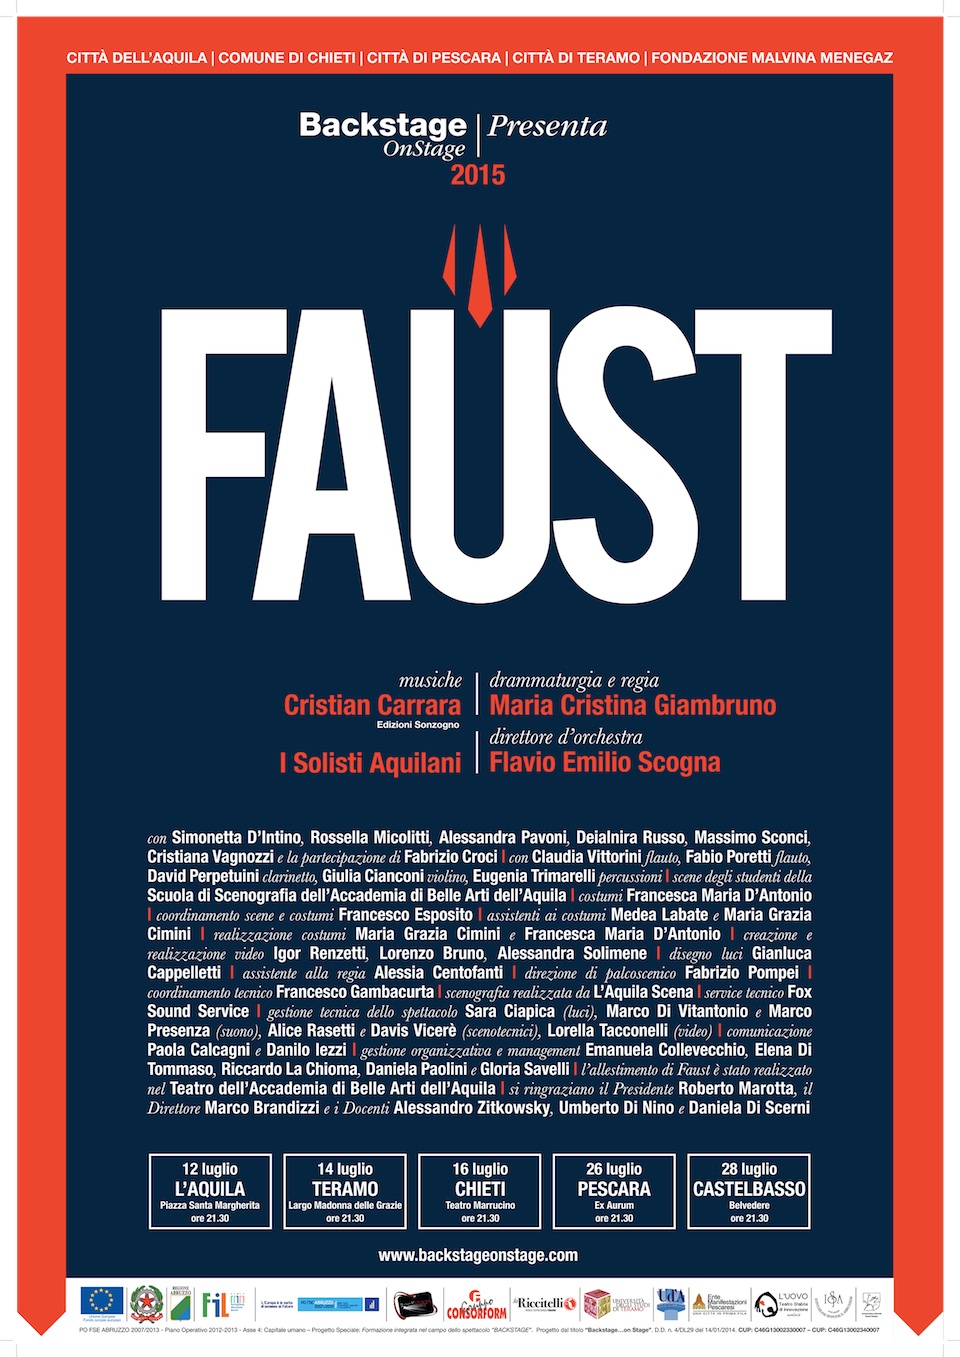 Faust, su musica di Cristian Carrara, versione drammaturgica e regia di Maria Cristina Giambruno, L’Aquila, Piazza Santa Margherita, Domenica 12 luglio 2015, ore 21.30